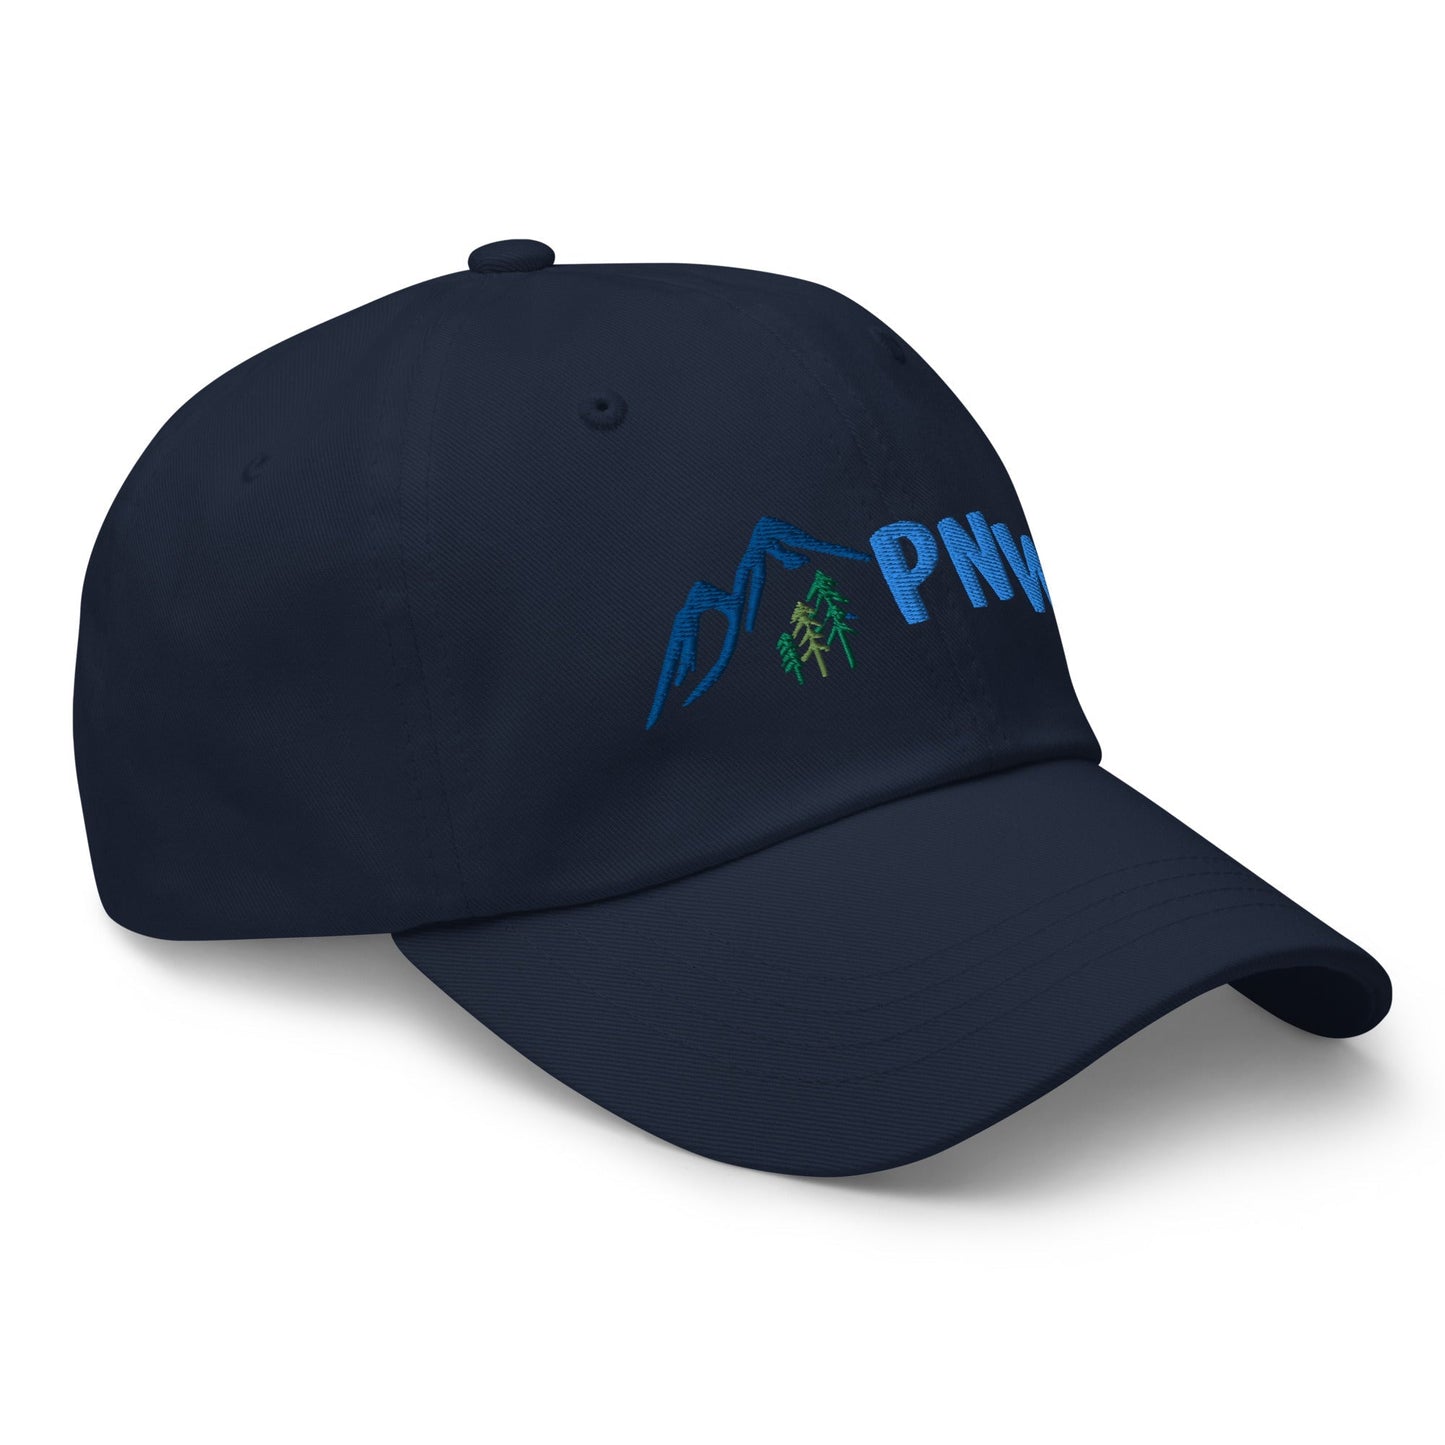 PNW | Dad Hat